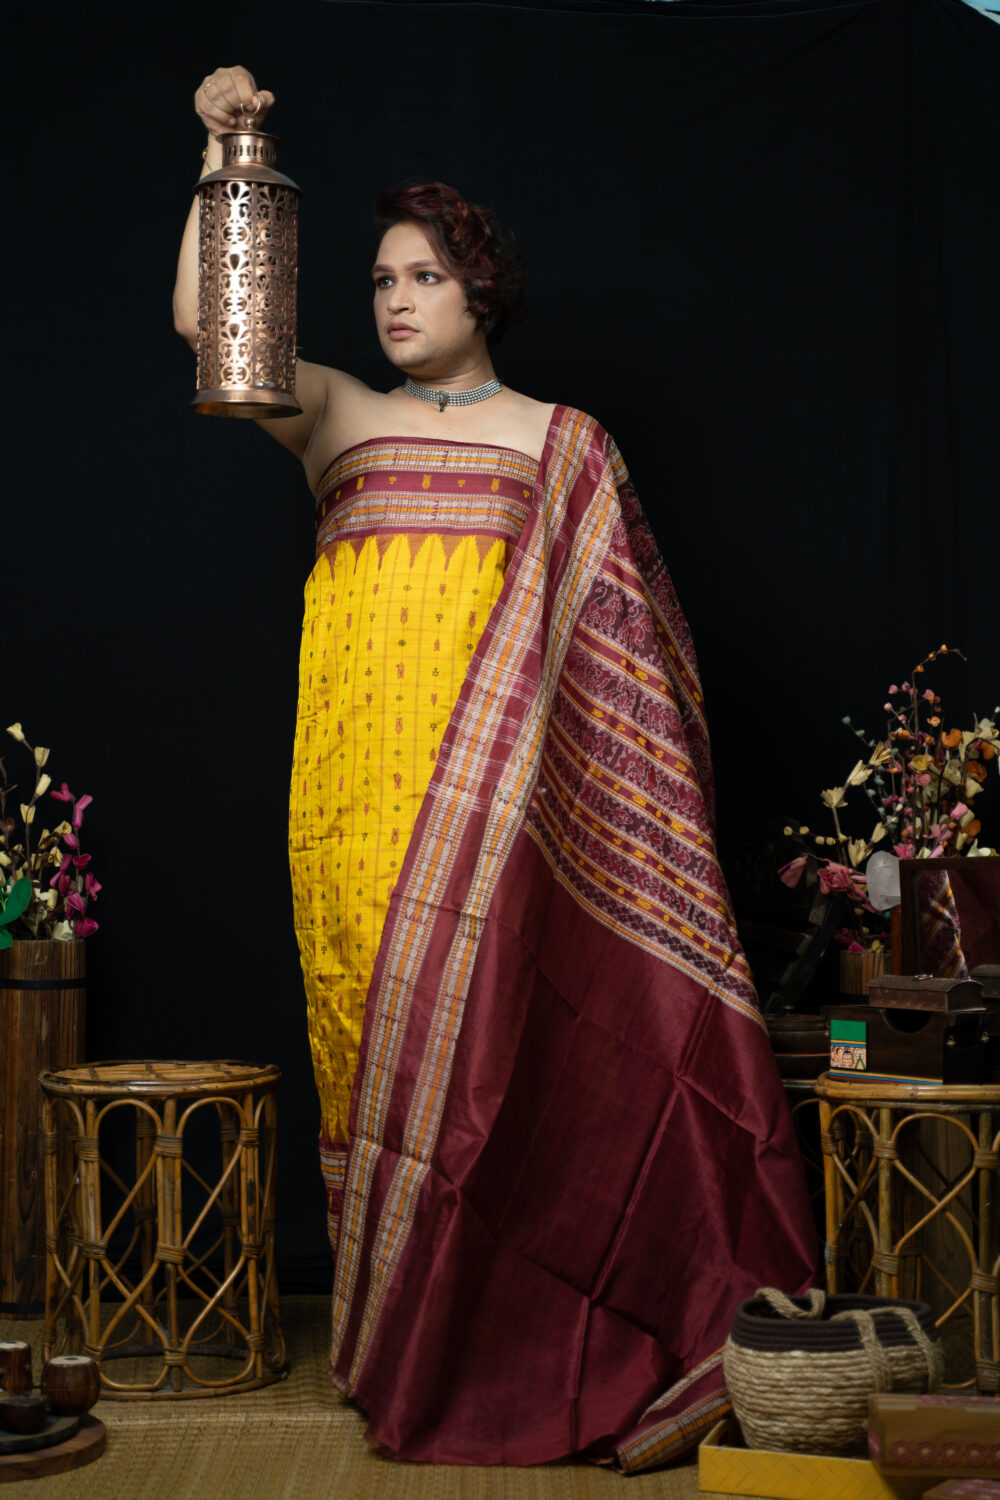 Fabric Clothing of Maharashtra and Odisha by Sparsh Nagrale - YouTube